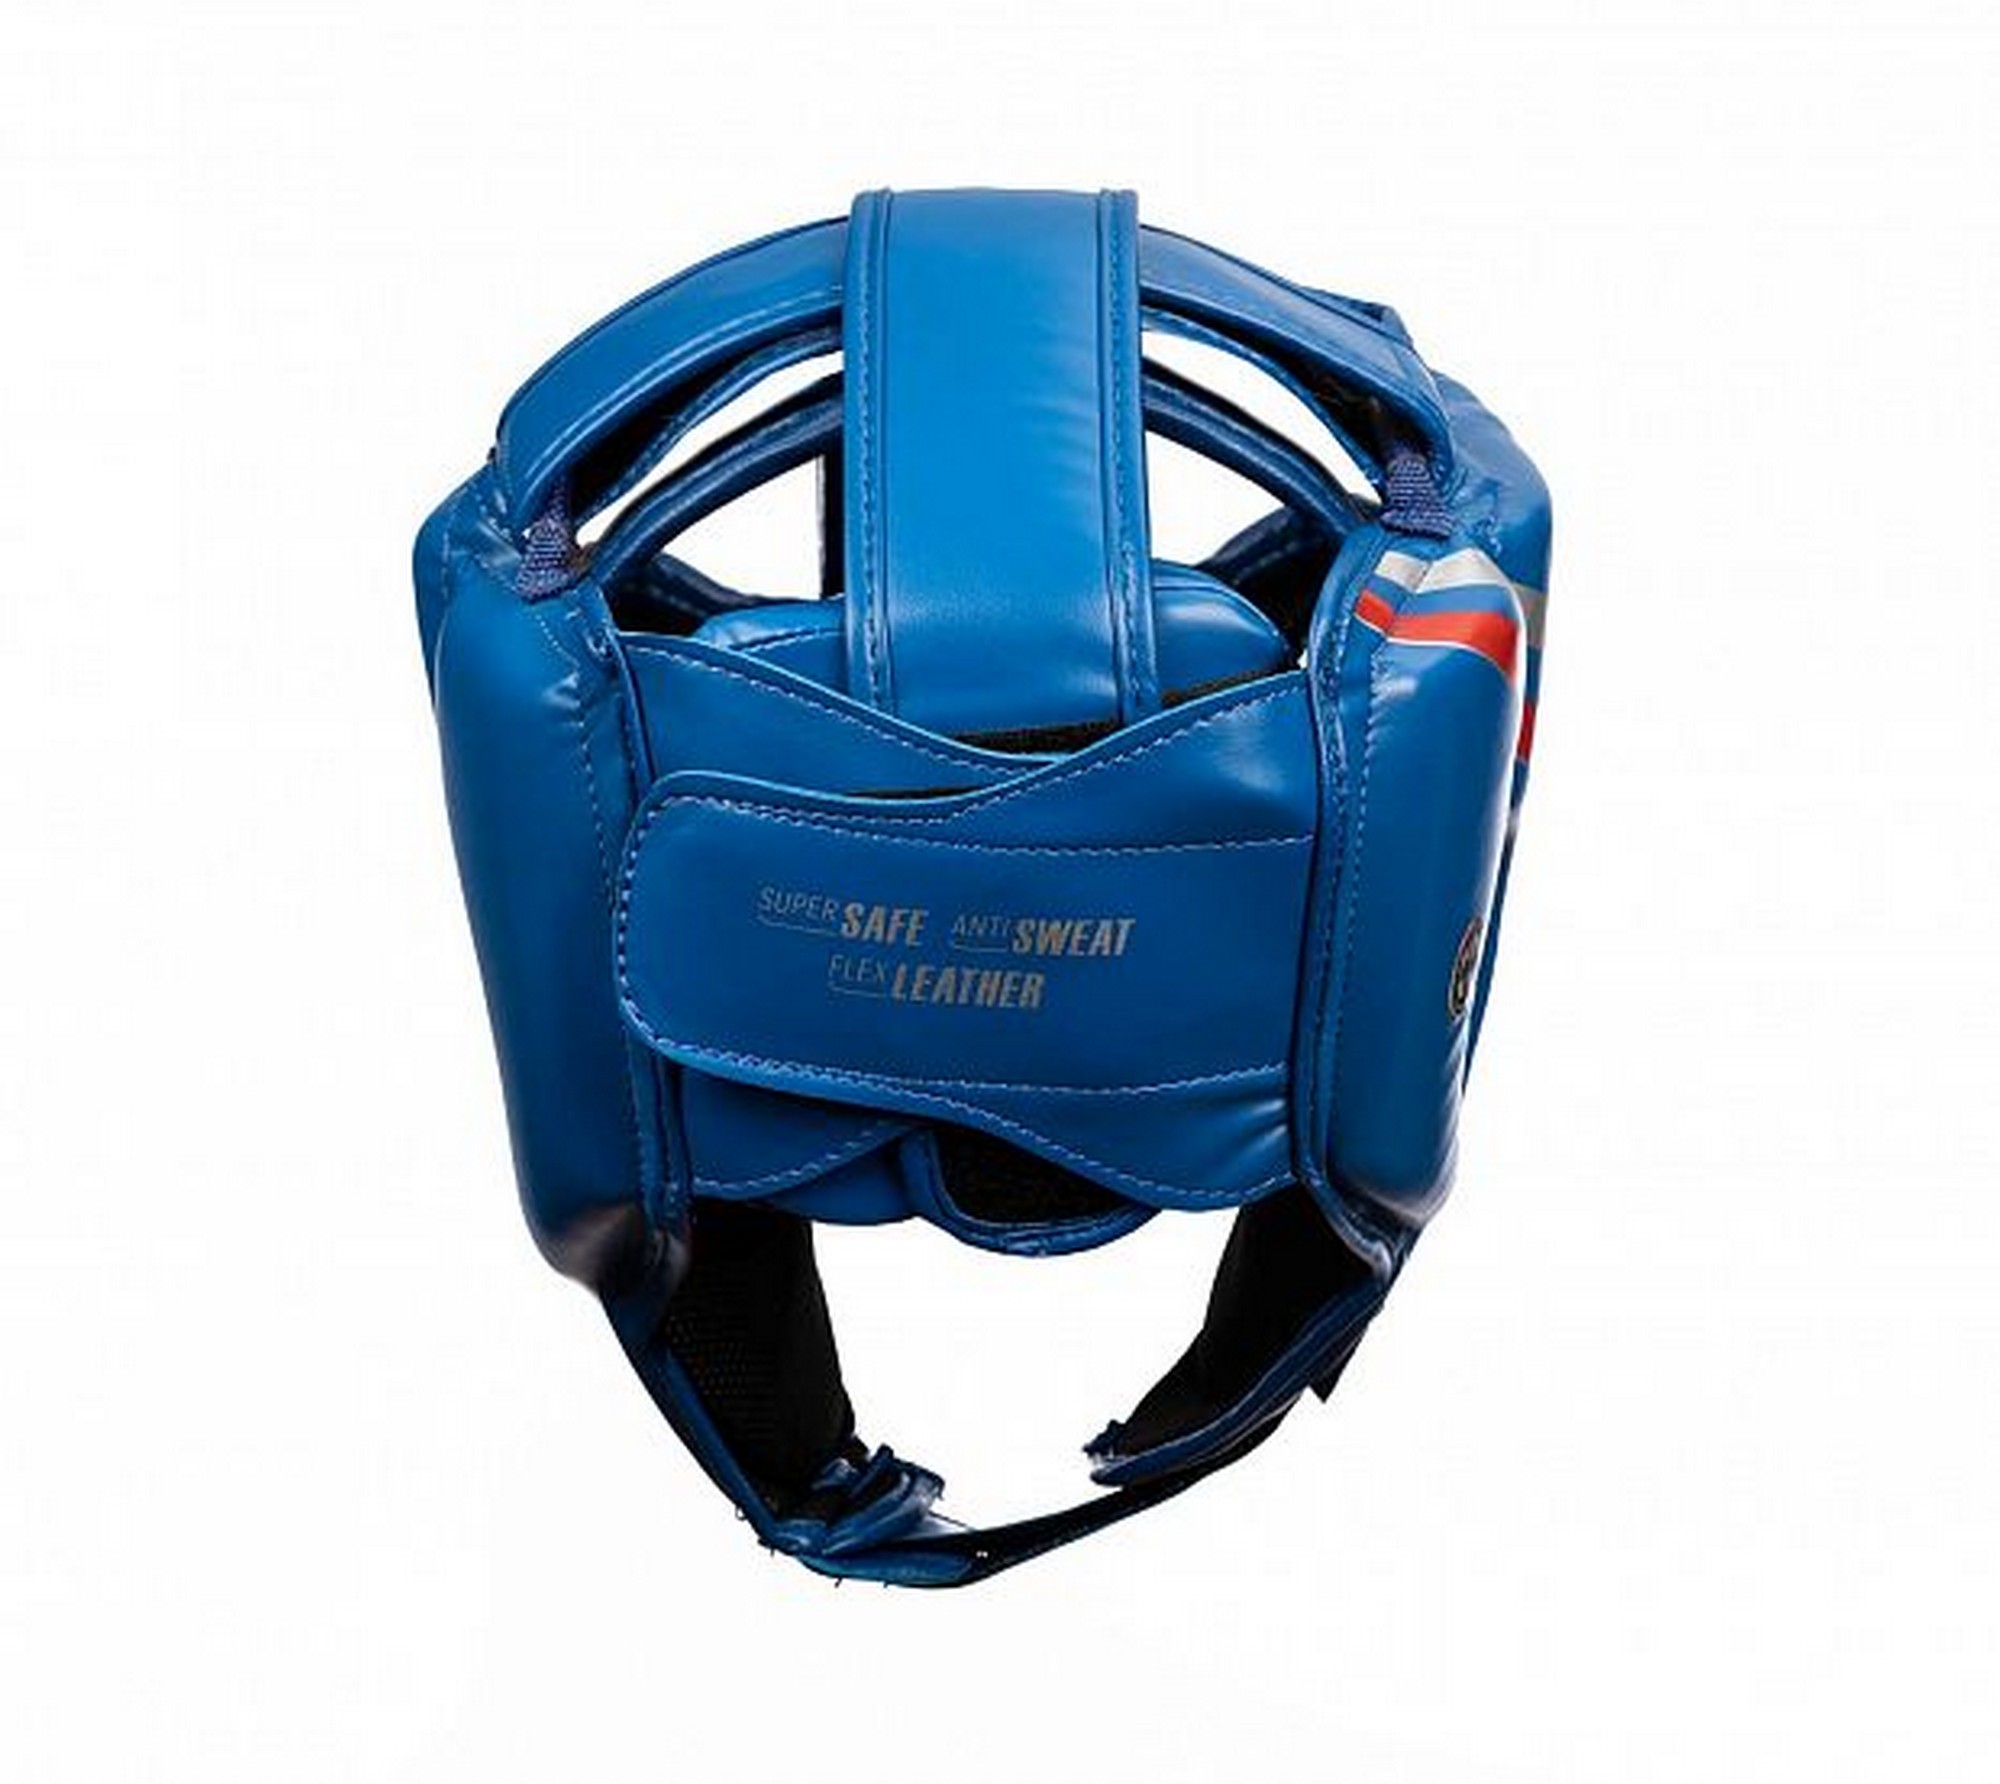 Шлем боксерский Clinch Olimp Dual C113 синий 2000_1784